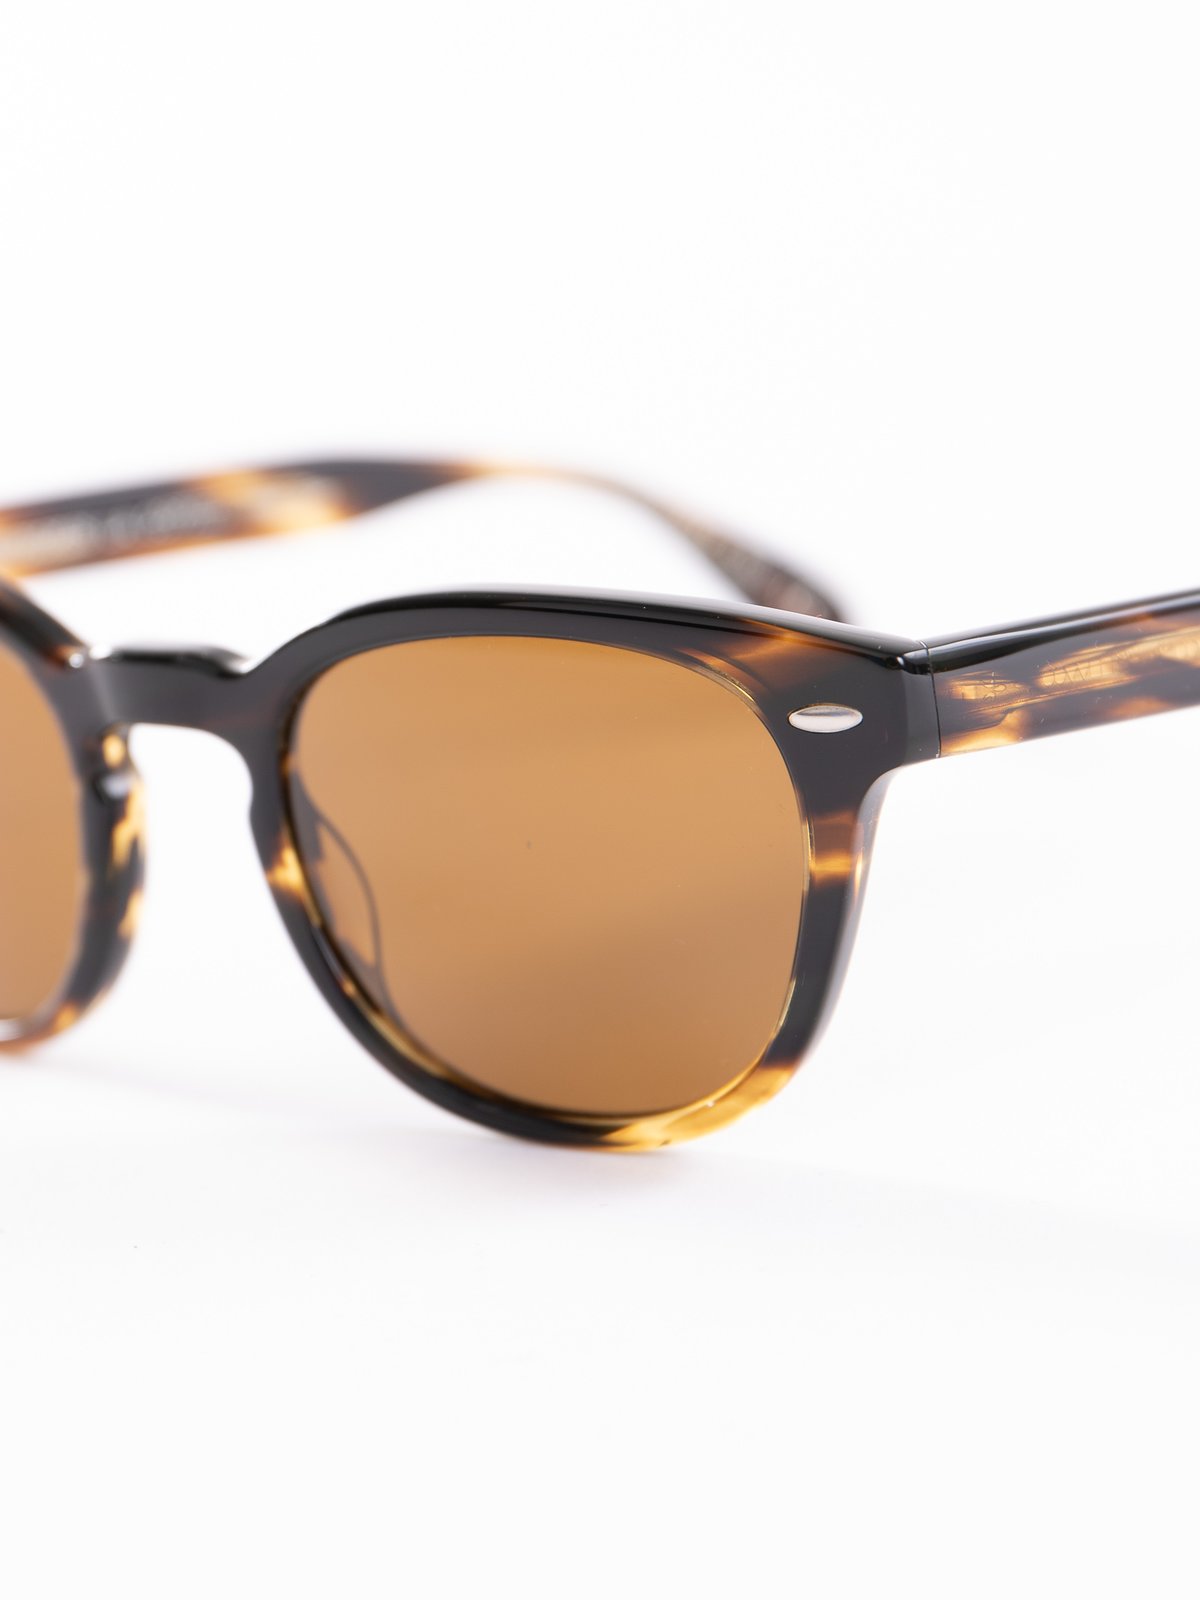 Cocobolo/Brown Sheldrake Sunglasses - Image 3